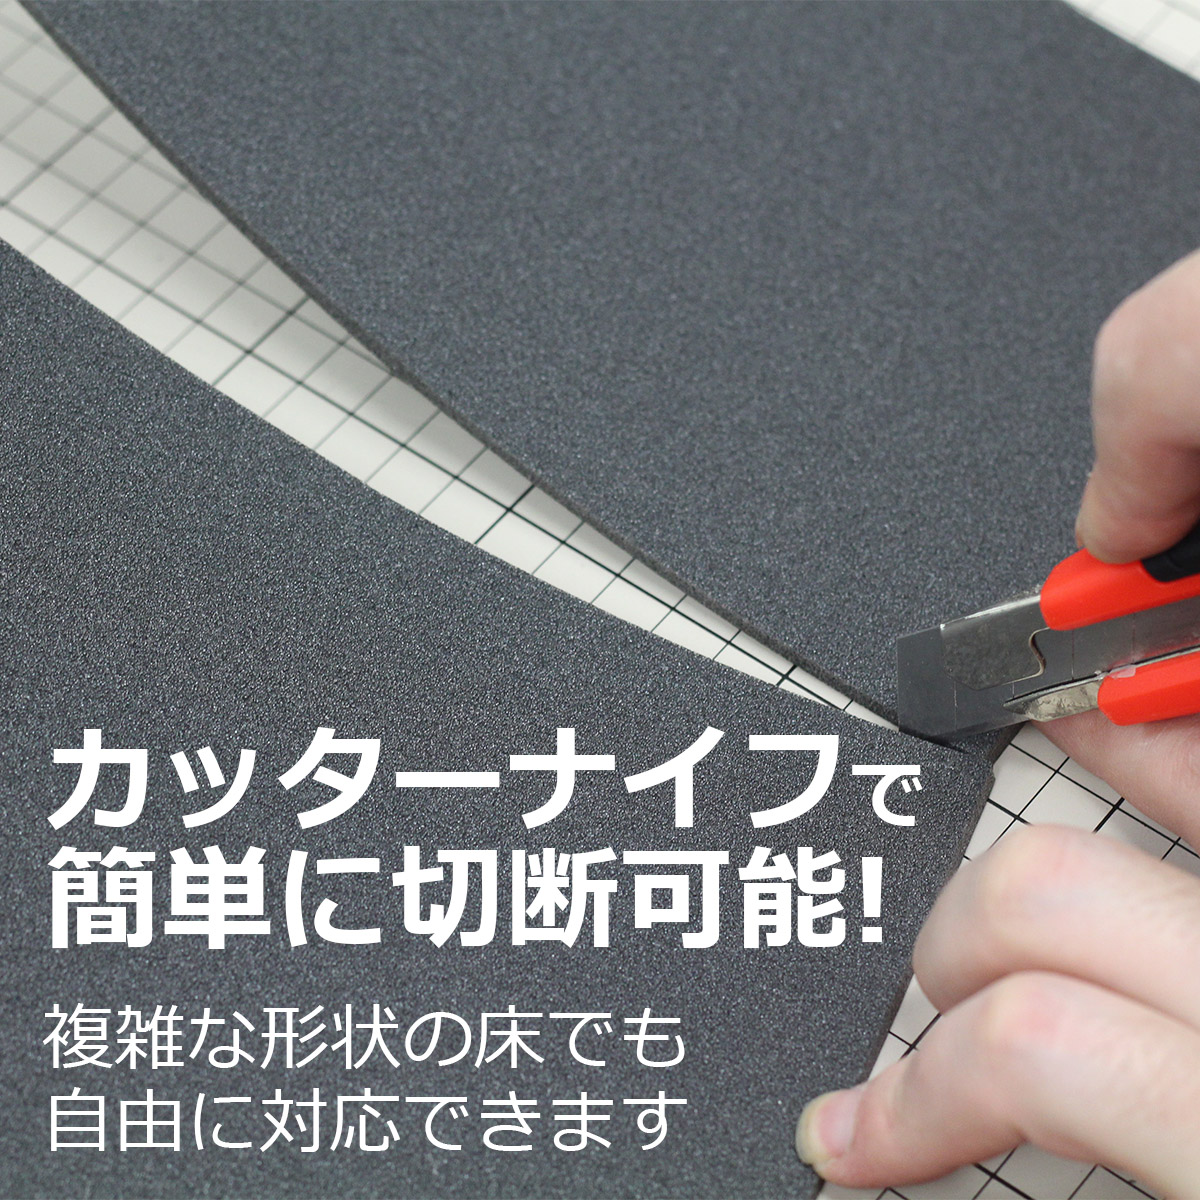 カッターナイフで簡単に切断可能　複雑な形状の床でも自由に対応できます